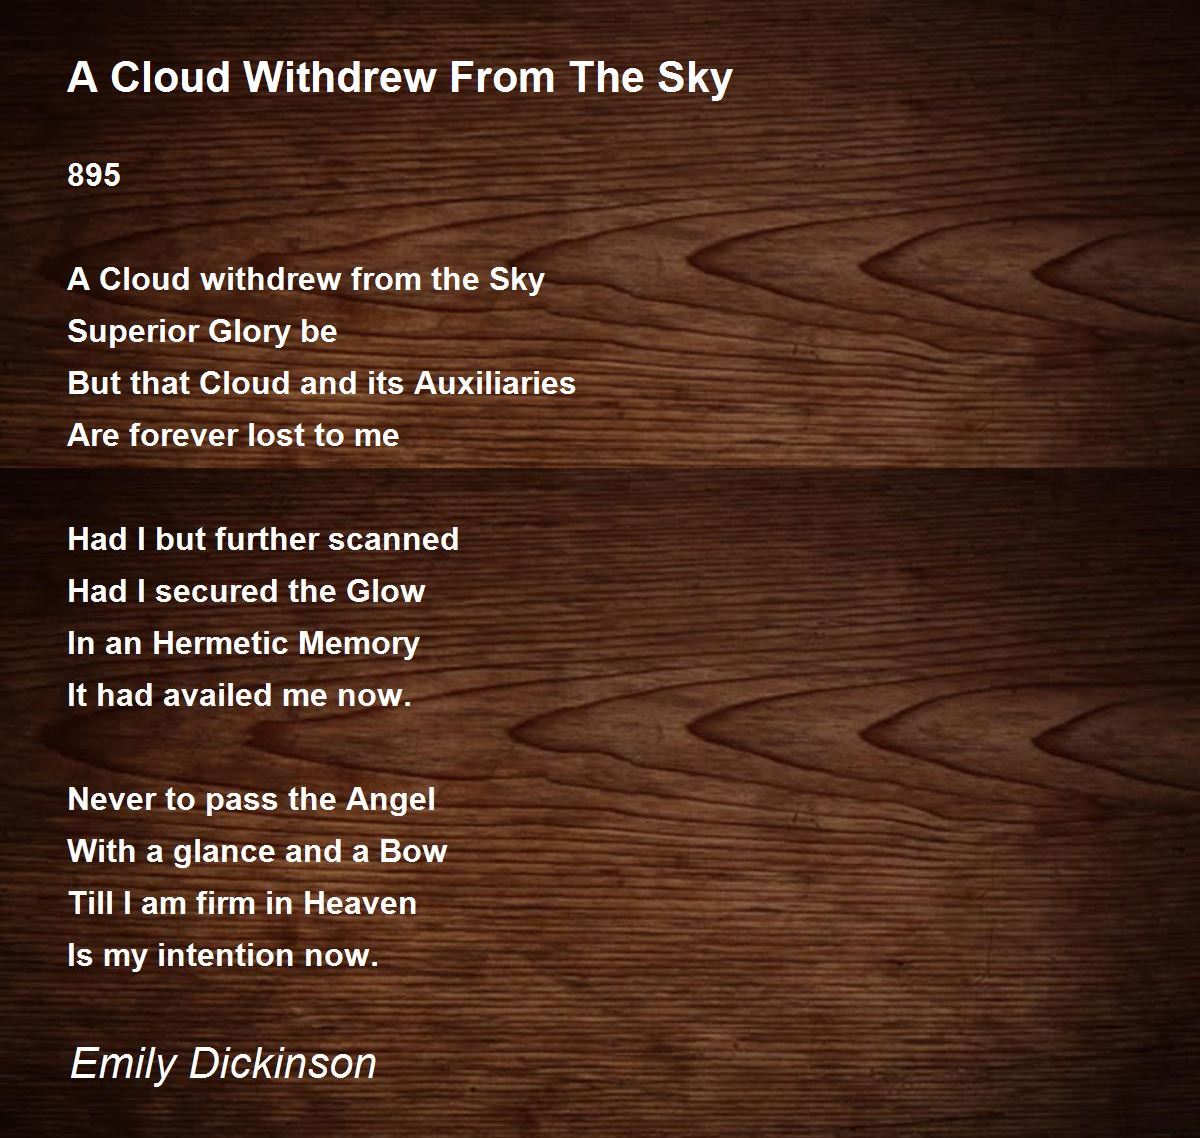 emily dickinson short love poems